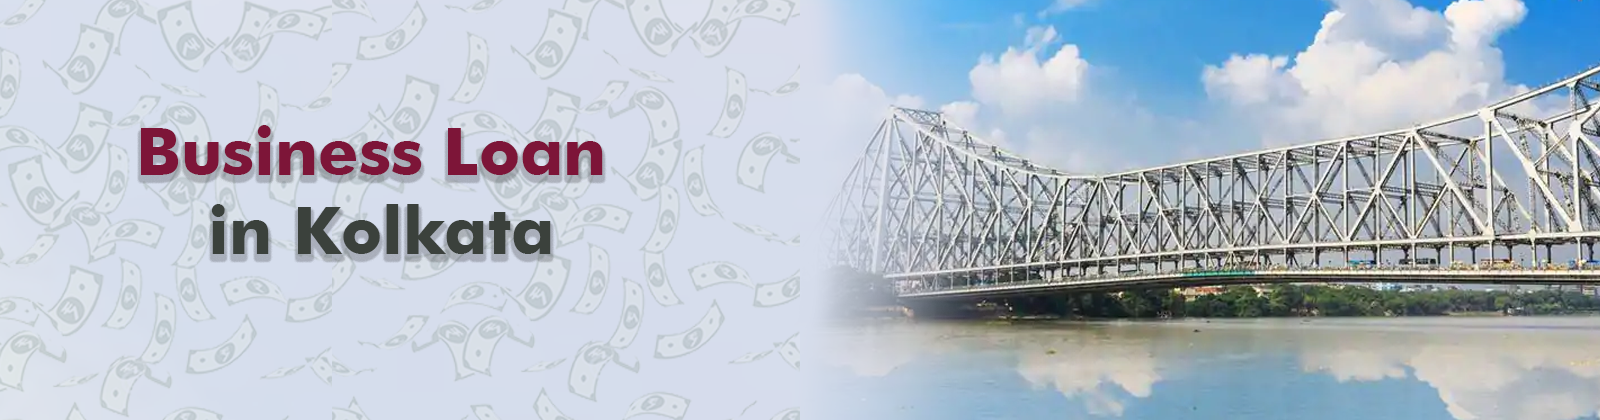 Business Loan in Kolkata